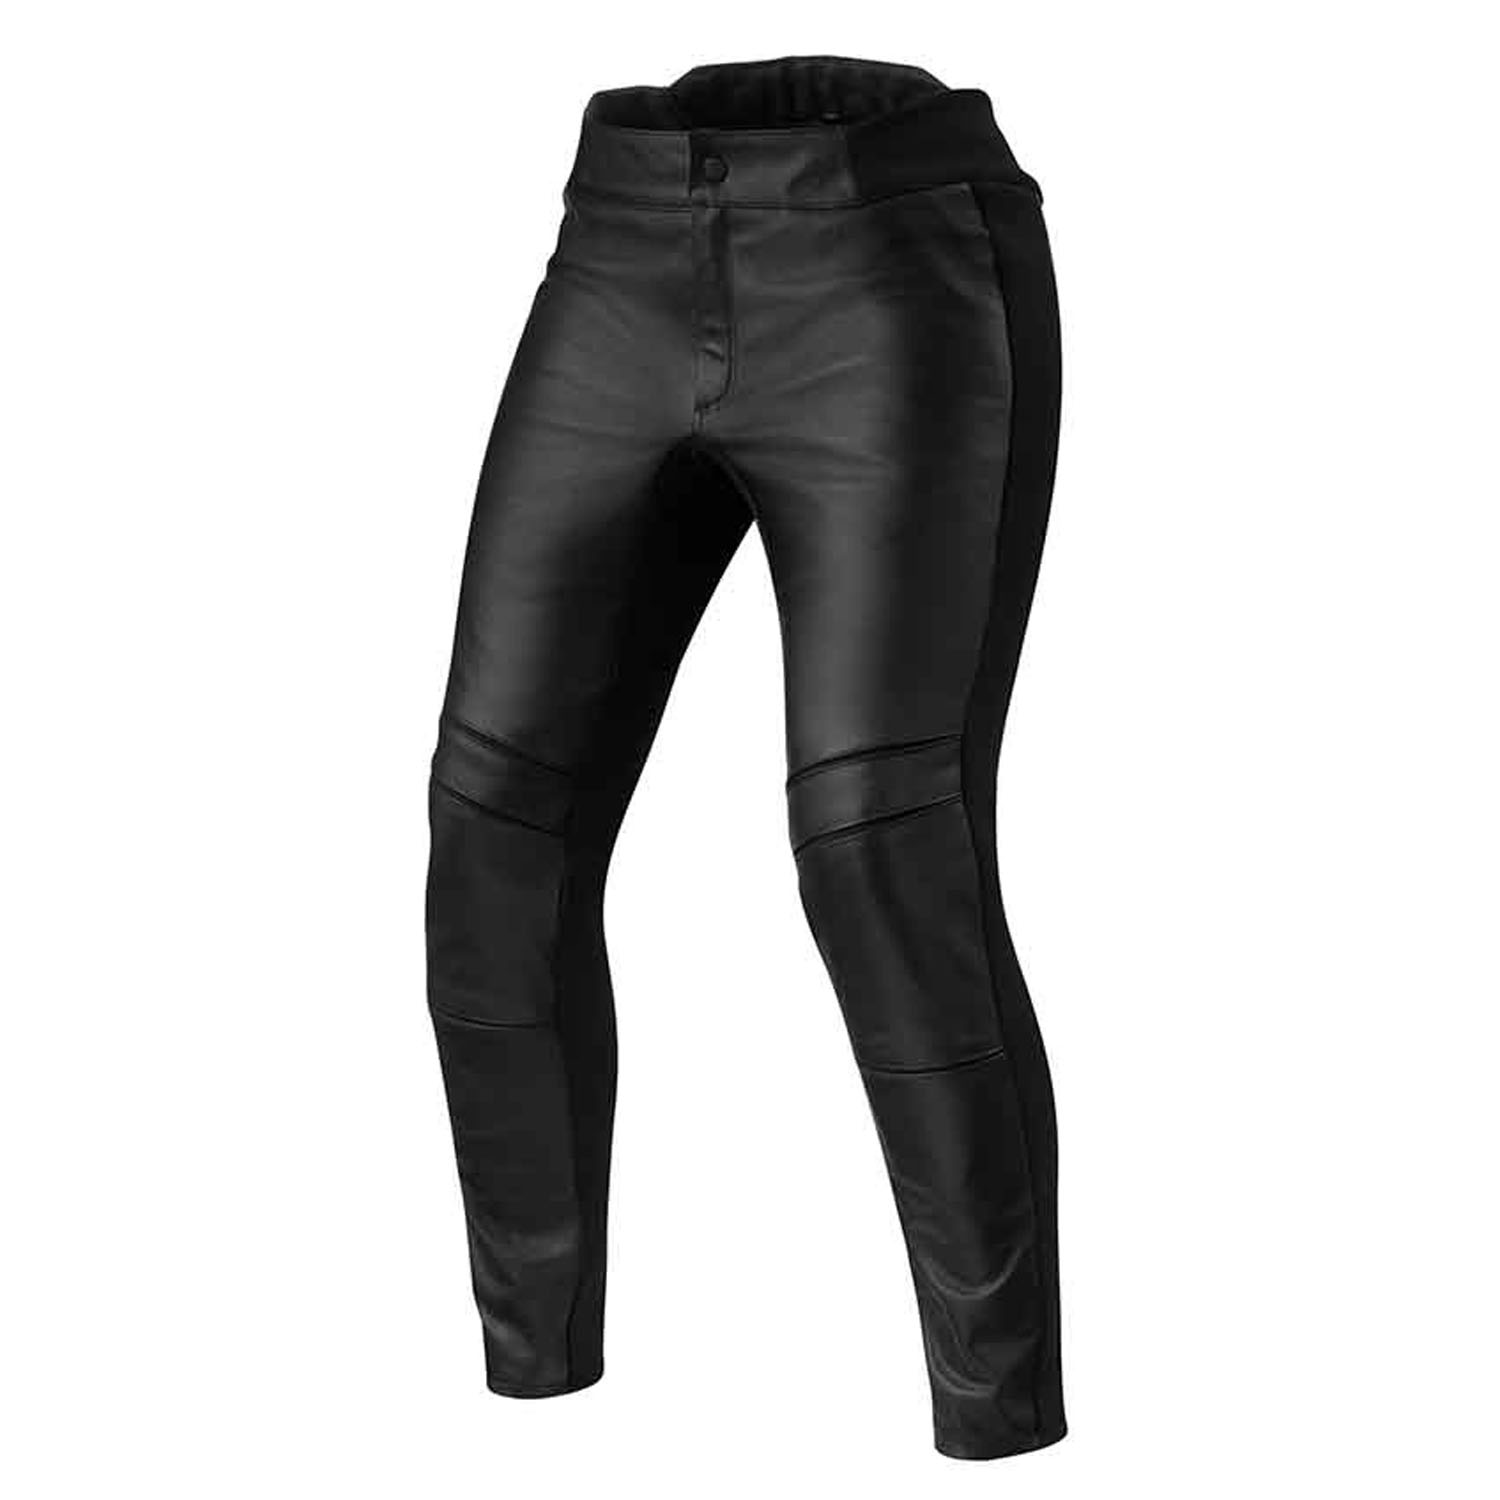 Image of REV'IT! Maci Ladies Black Standard Motorcycle Pants Size 44 ID 8700001359108